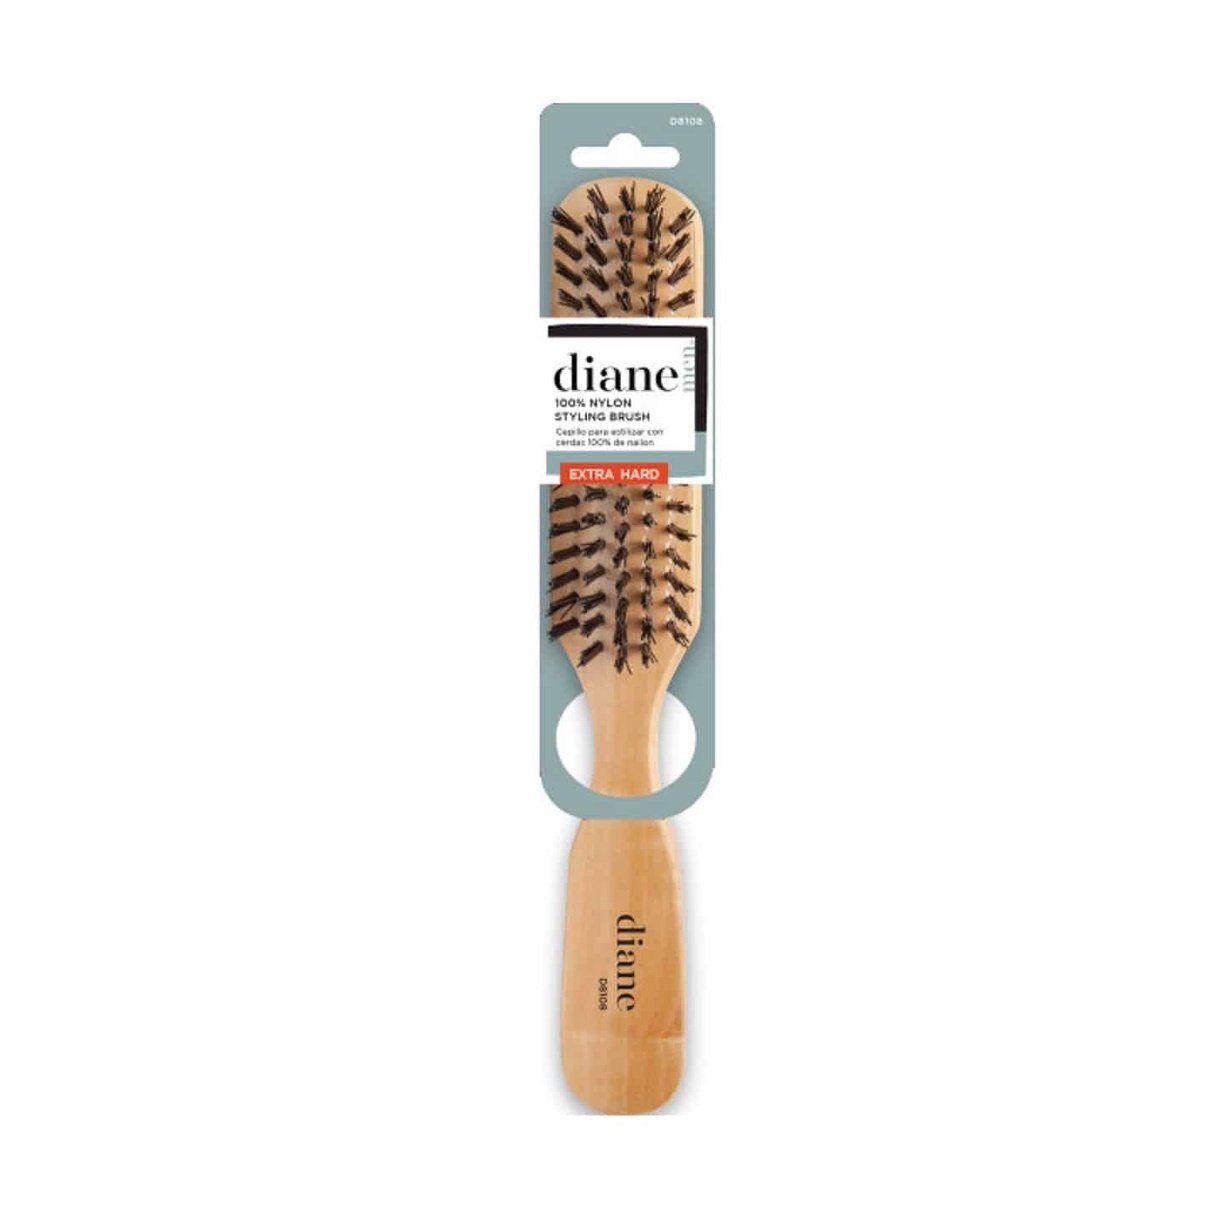 Diane Hard 100% Nylon Styling Brush